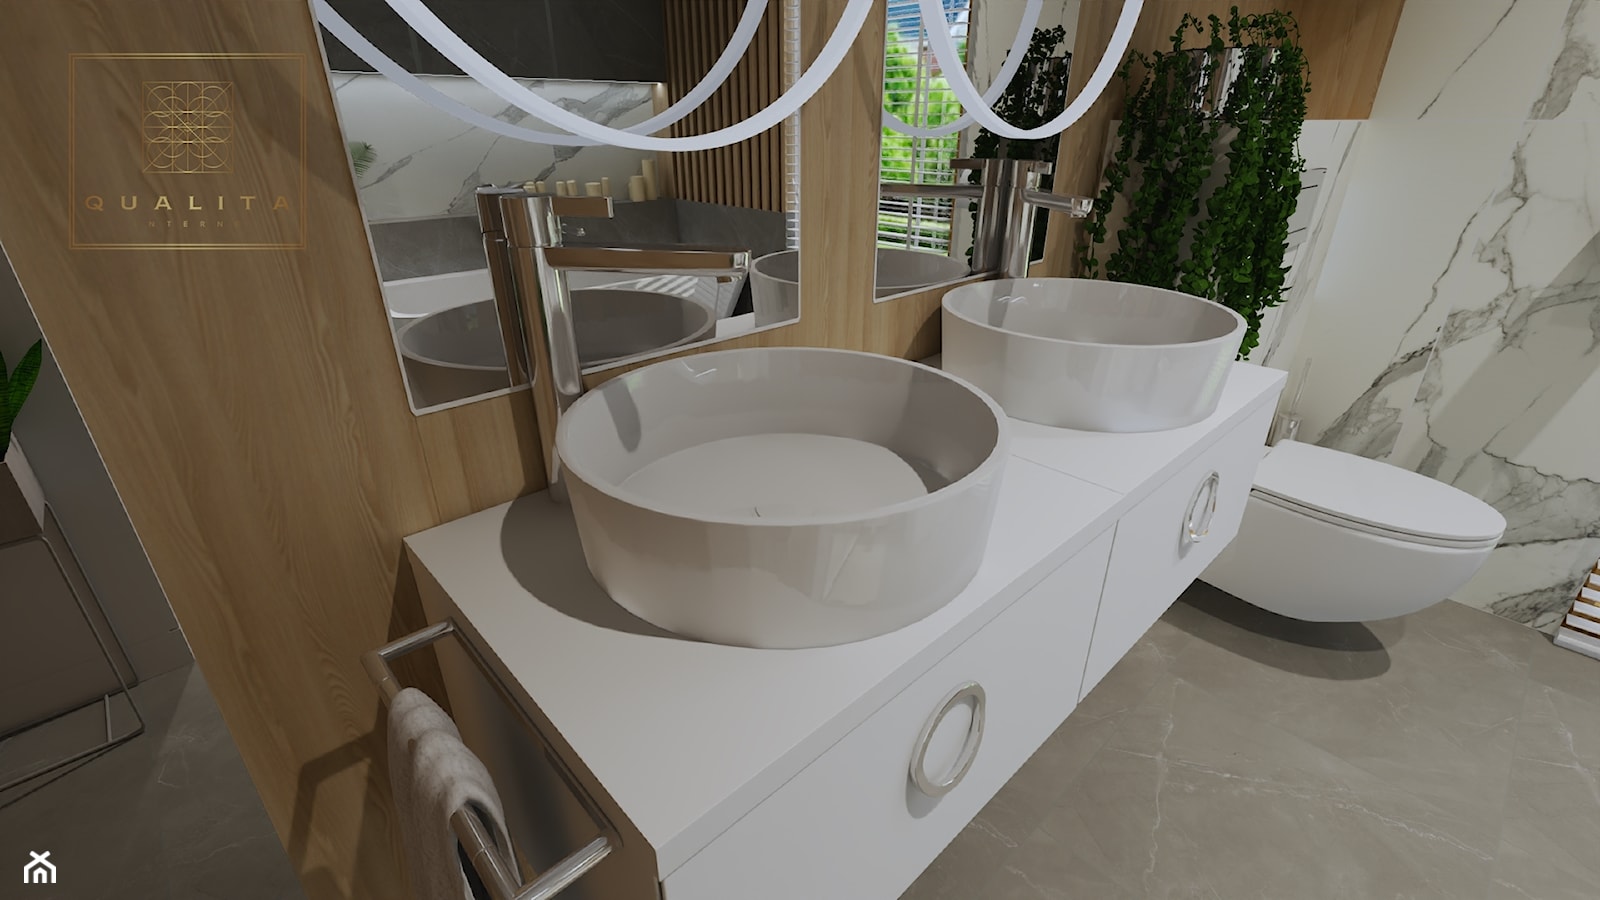 Nowoczesna łazienka z dwoma umywalkami - zdjęcie od Qualita Interno - Homebook